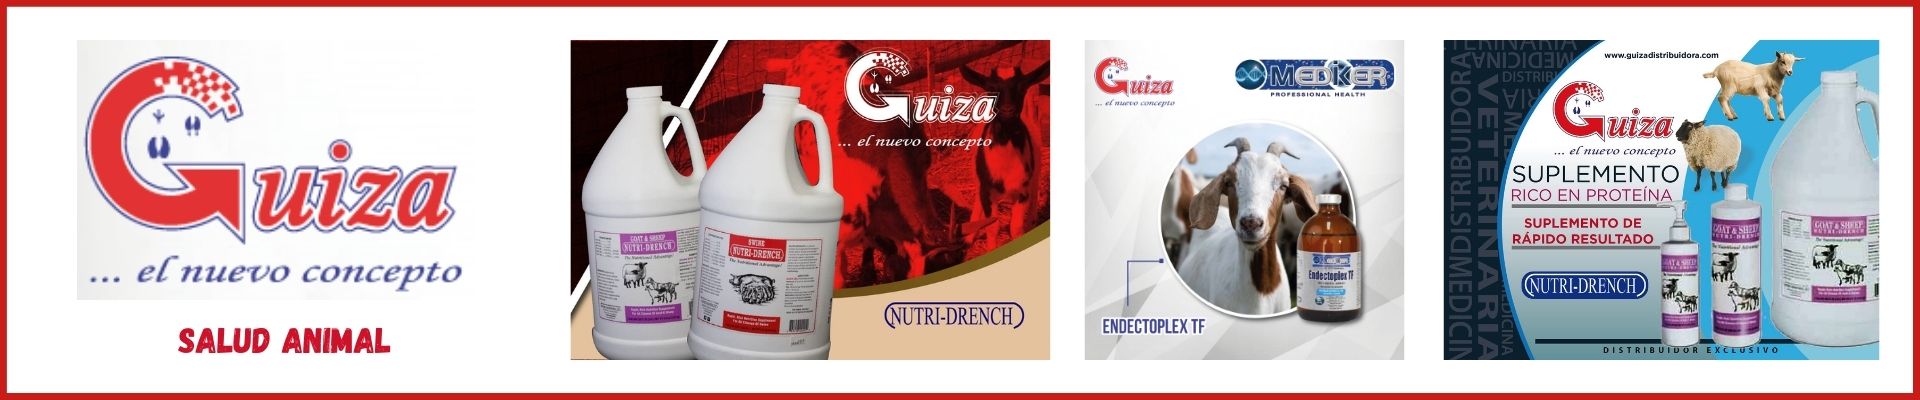 Banner Guiza Distribuidora